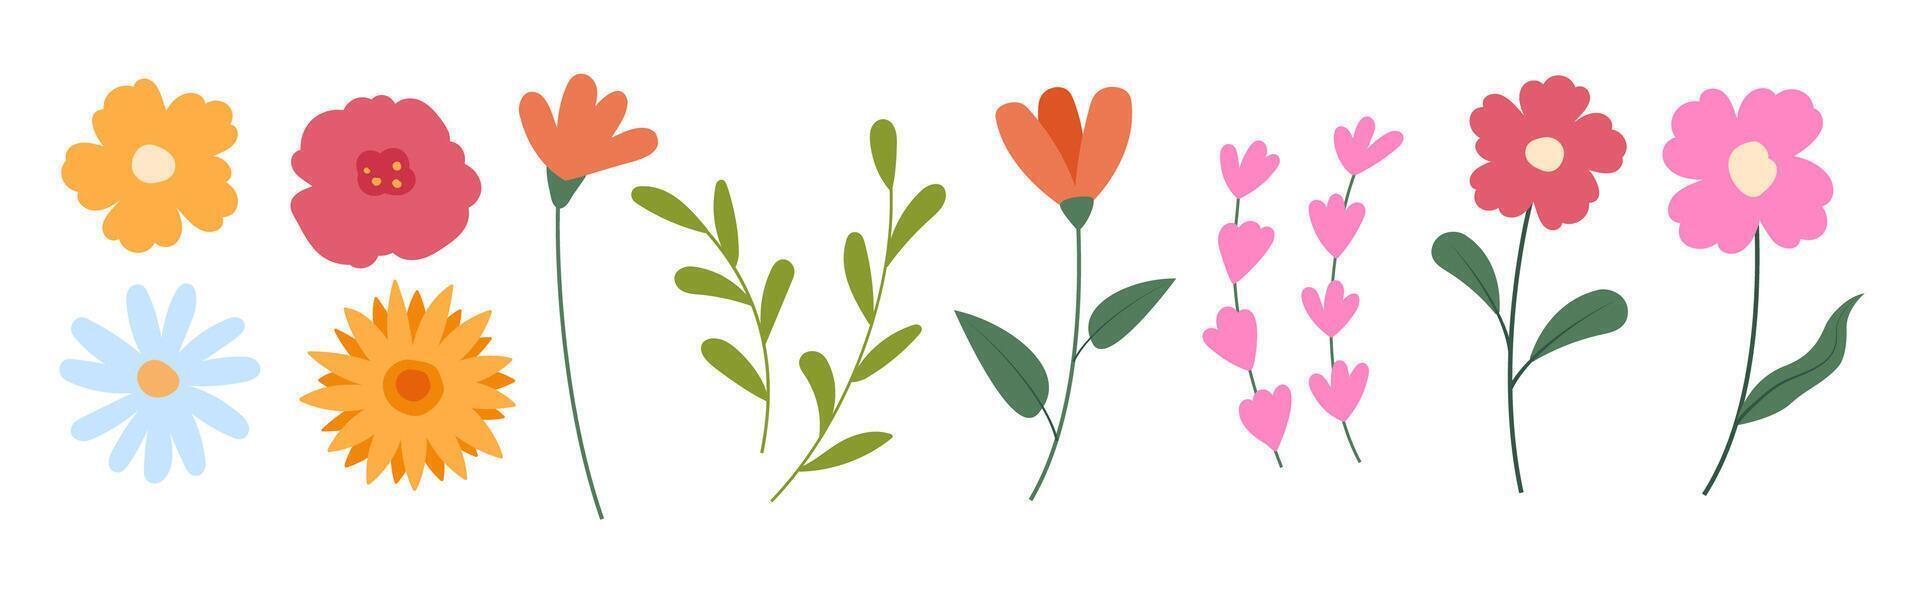 Frühling Blumen Satz, Blühen Blumen, isoliert auf Weiß Hintergrund. Blumen- und Blätter Elemente Sammlung. vektor